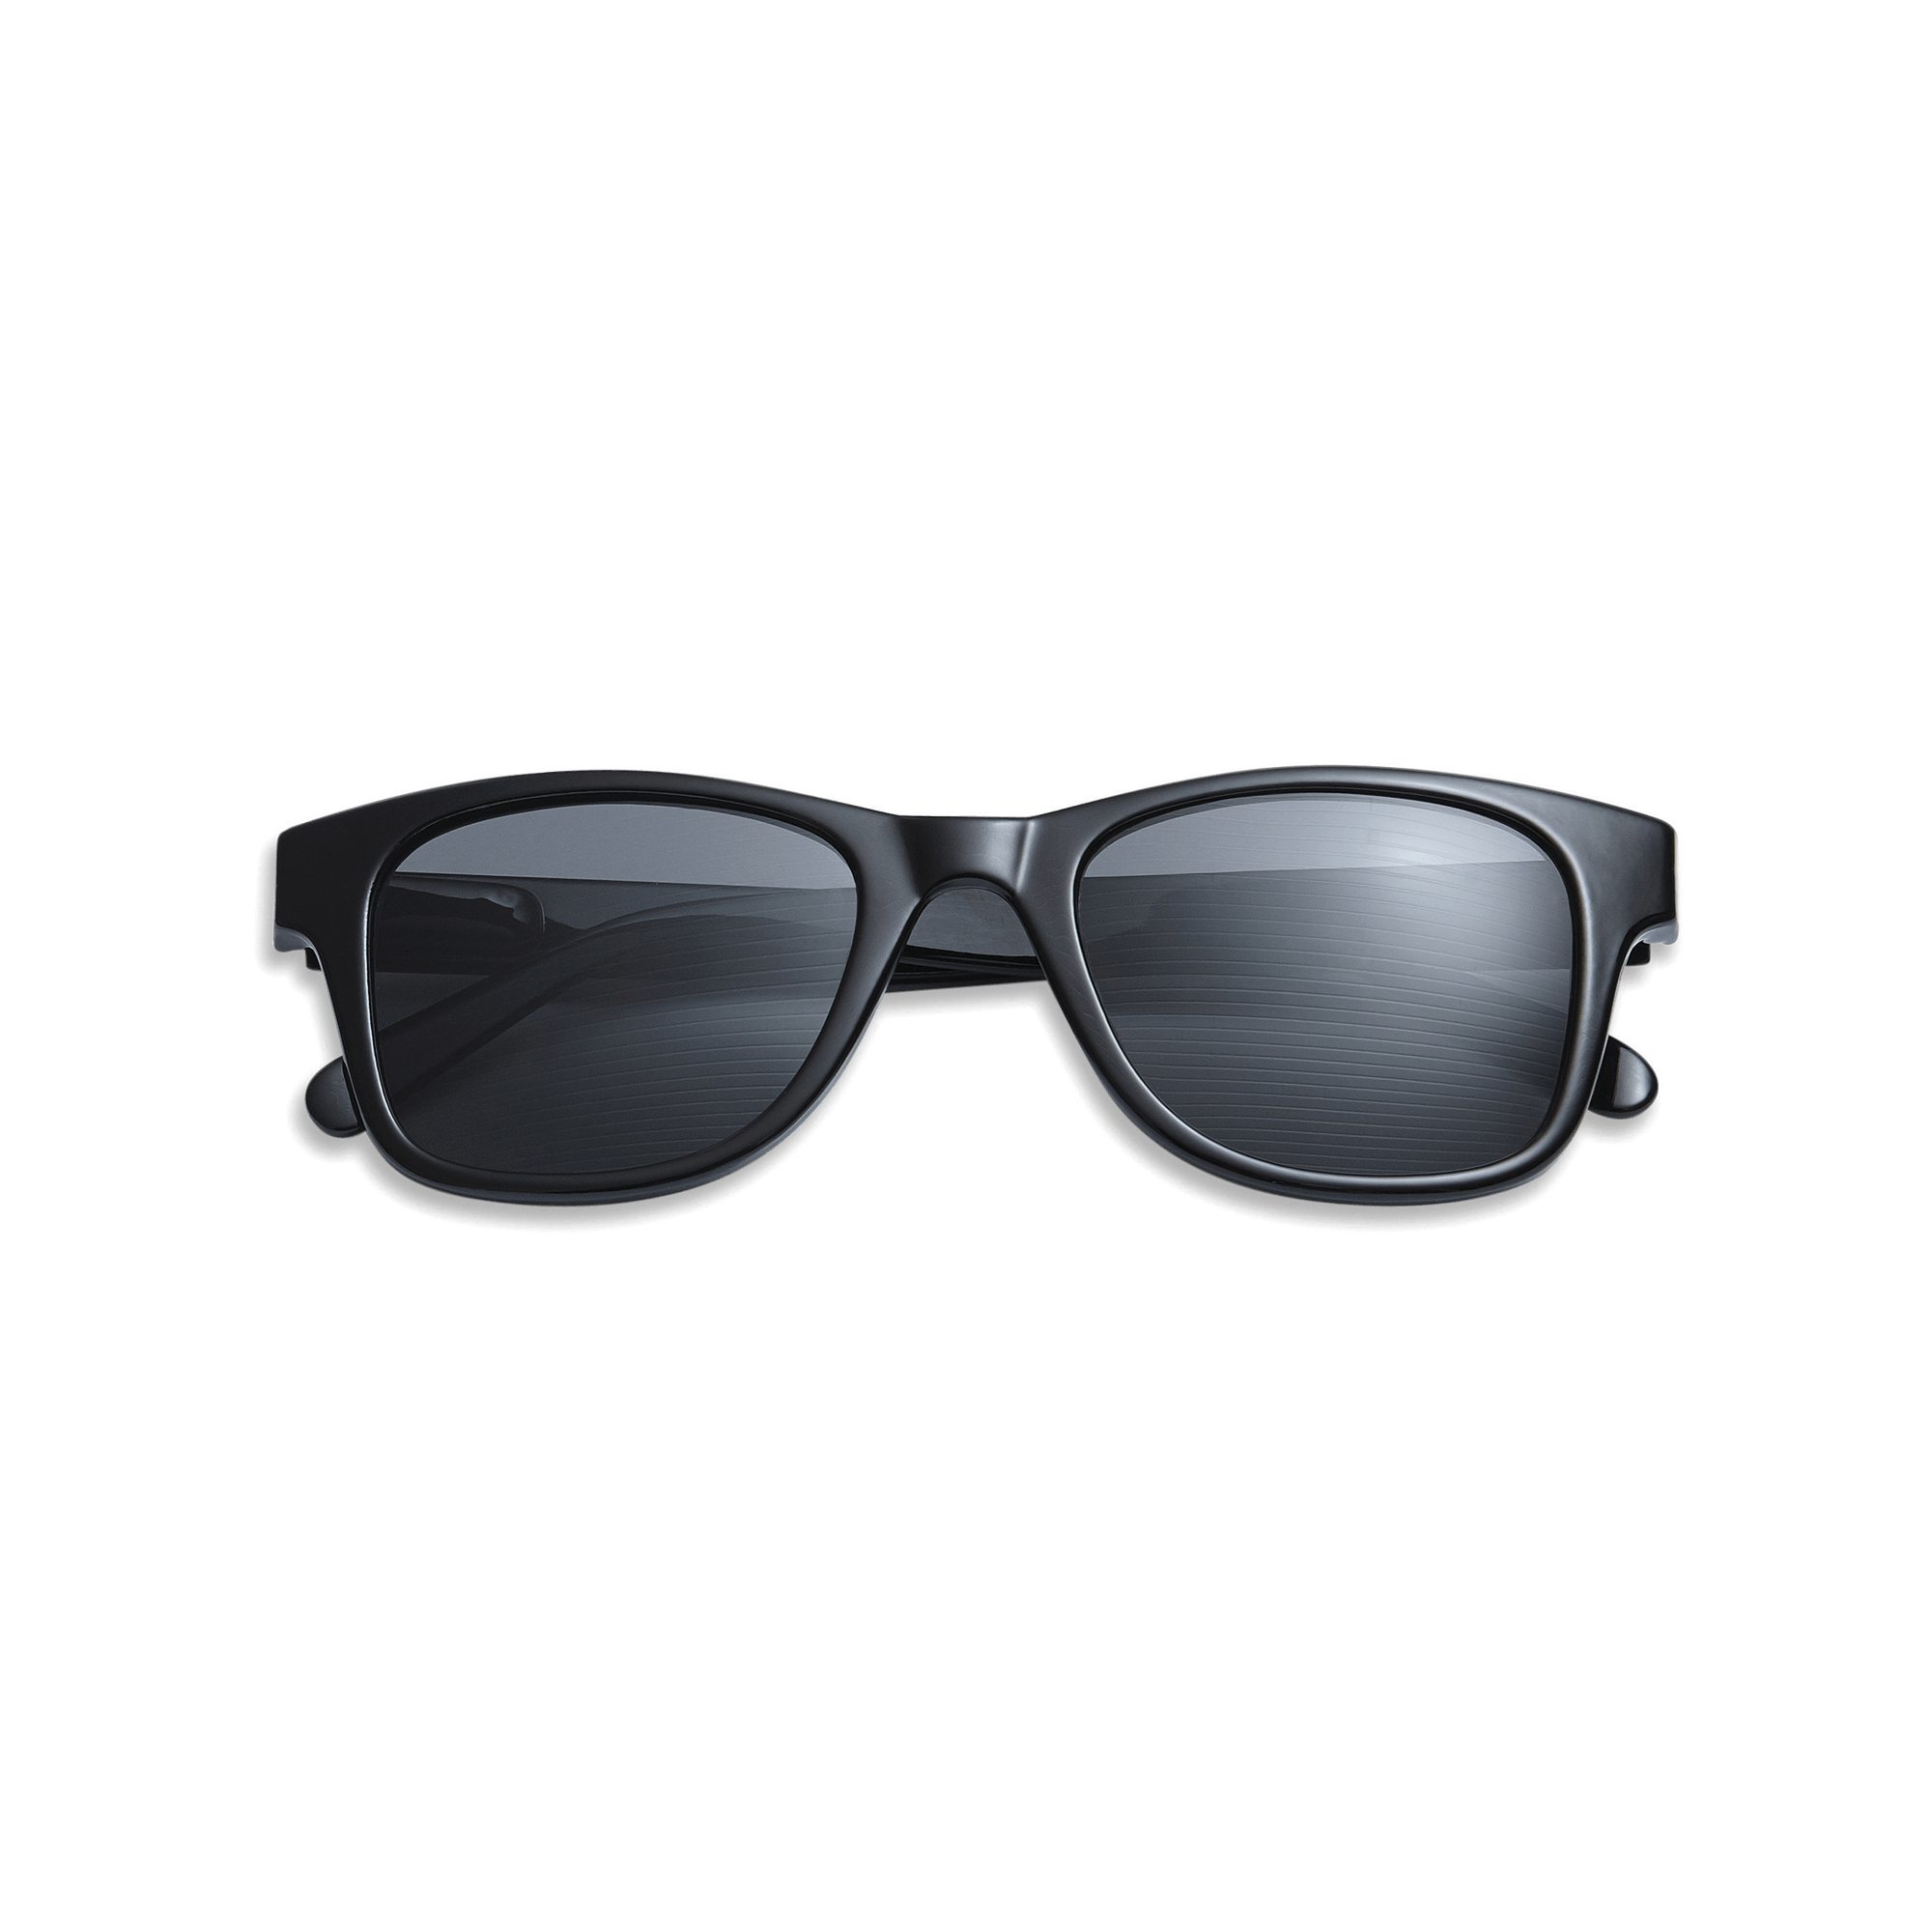 Sonnenfernbrillen Type B - black aus Have A Look